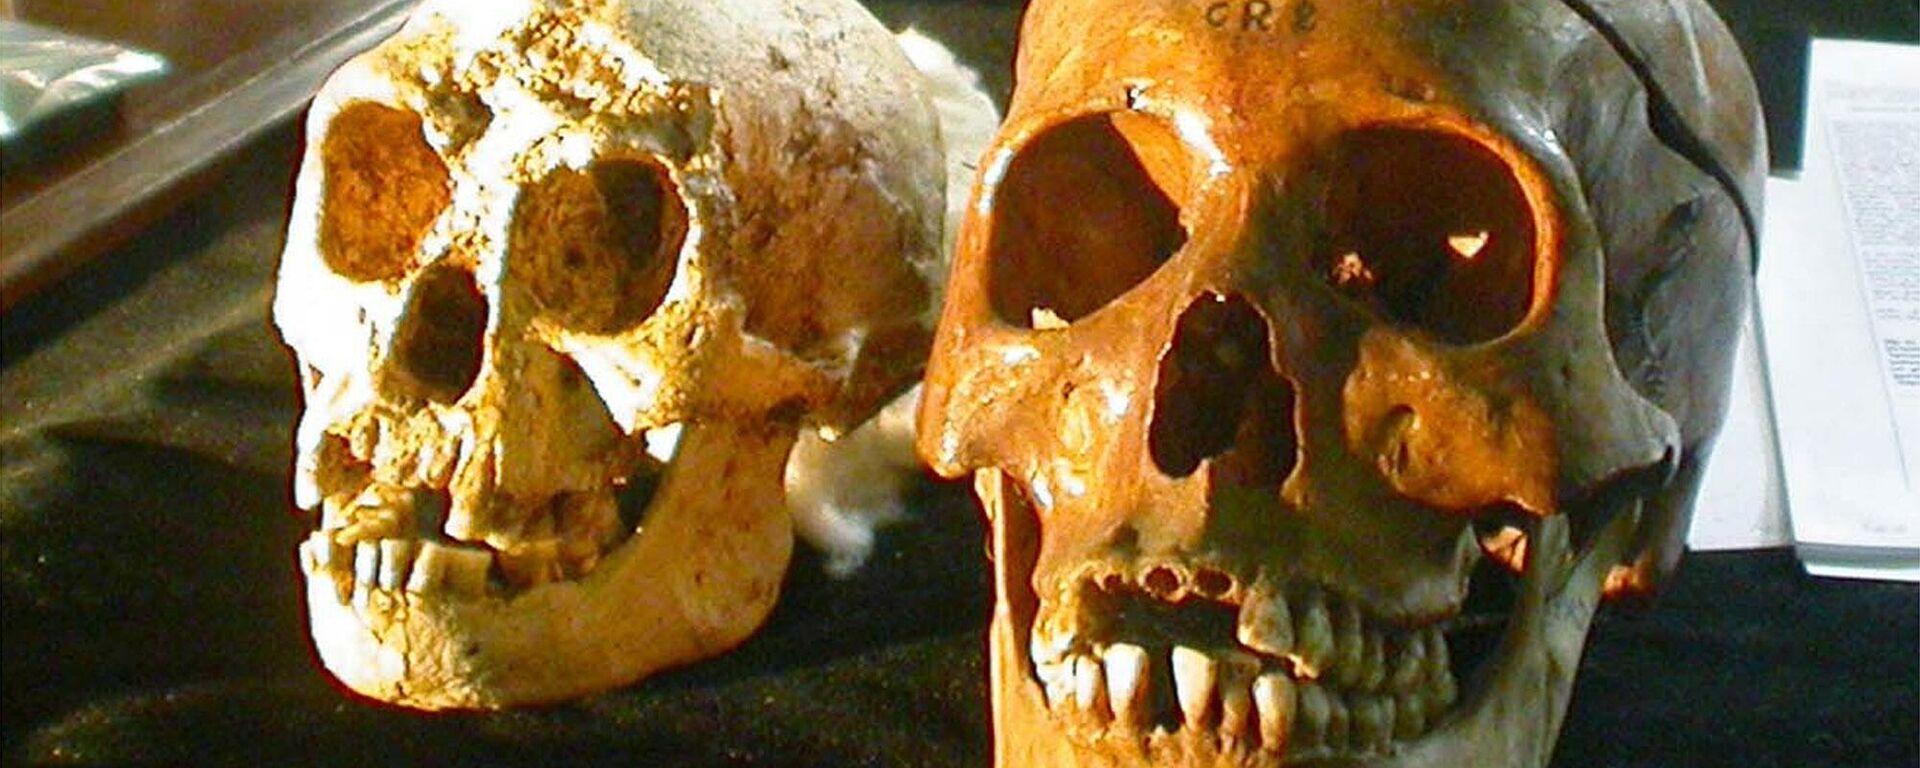 Череп недавно обнаруженного вида Homo floresiensis возрастом 18 000 лет выставлен рядом с черепом нормального человека (справа) на пресс-конференции в Джокьякарте, Индонезия, 2004 год - Sputnik Србија, 1920, 03.01.2023